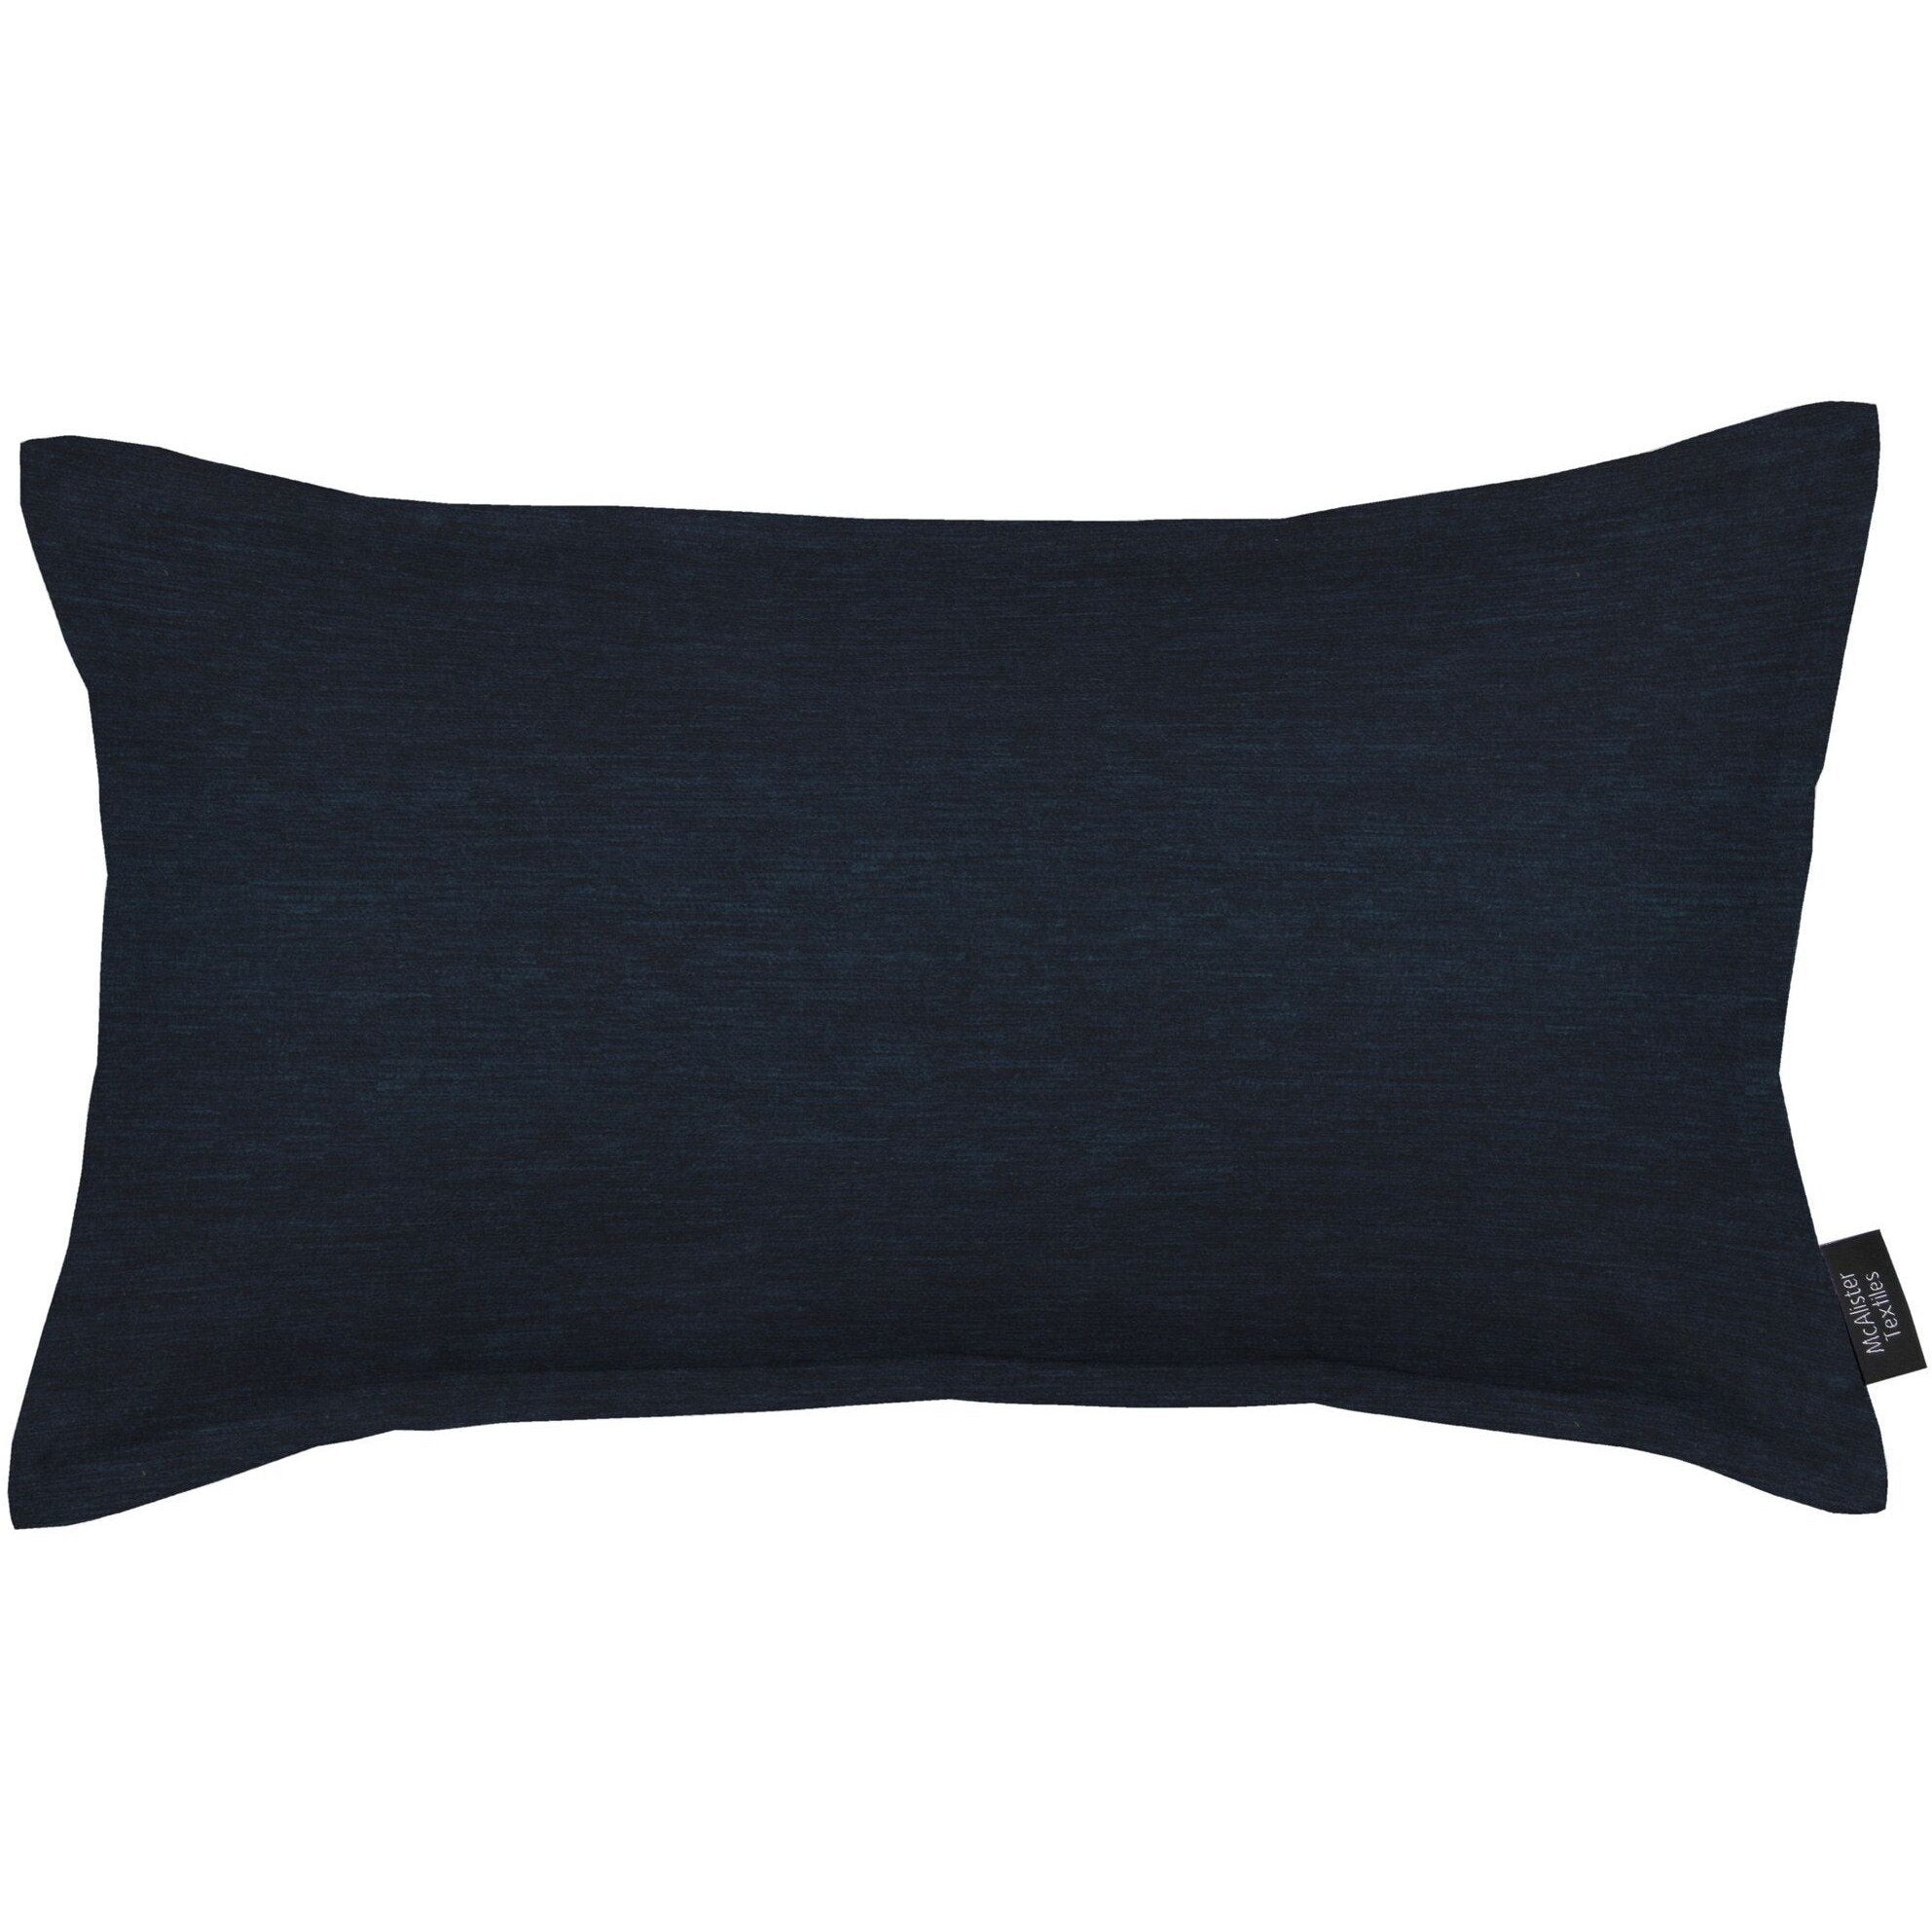 McAlister Textiles Plain Chenille Navy Blue Pillow Pillow Cover Only 50cm x 30cm 